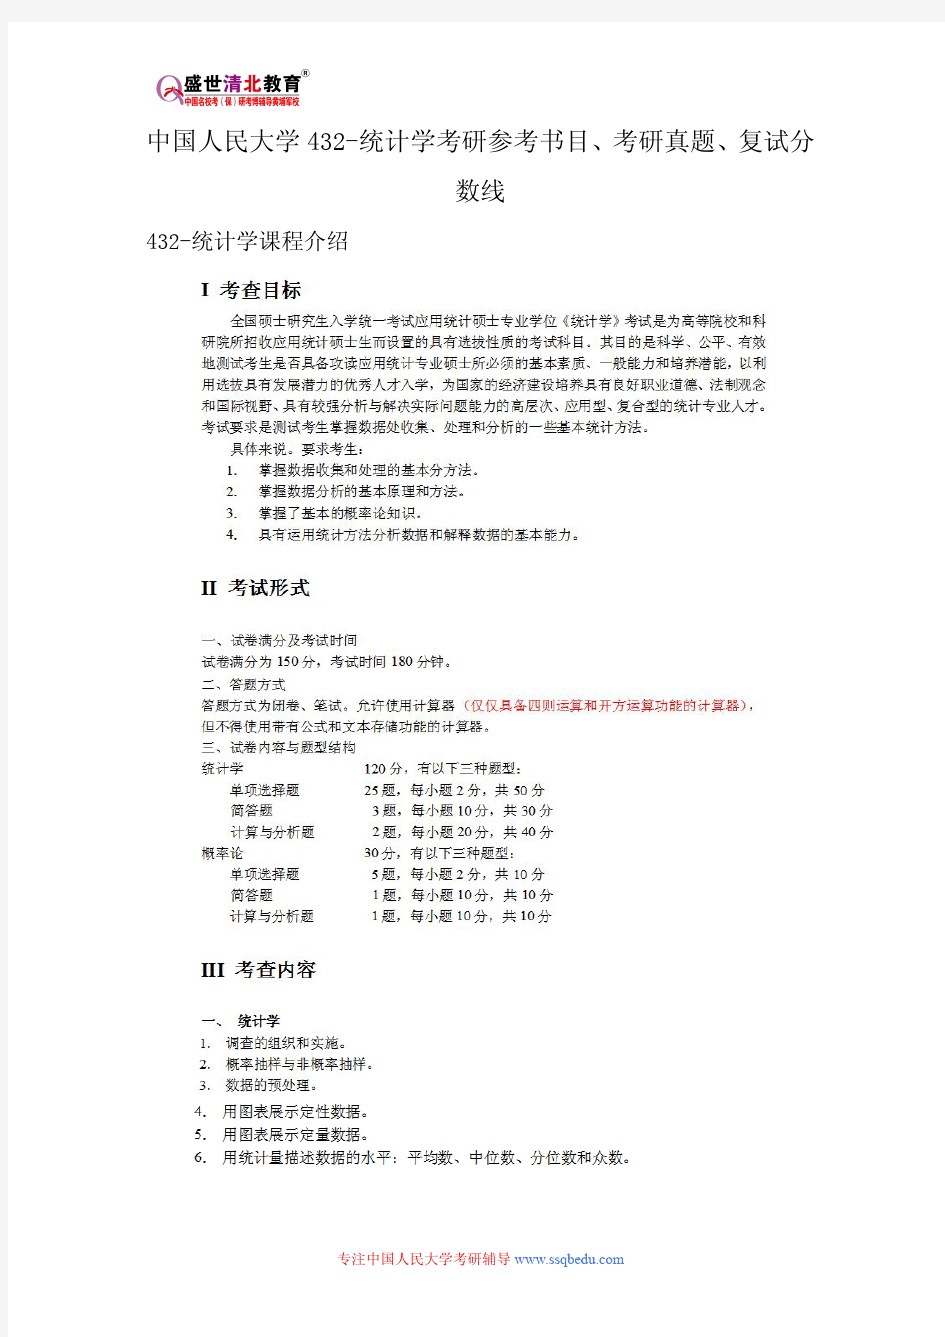 中国人民大学432-统计学考研参考书目、考研真题、复试分数线新